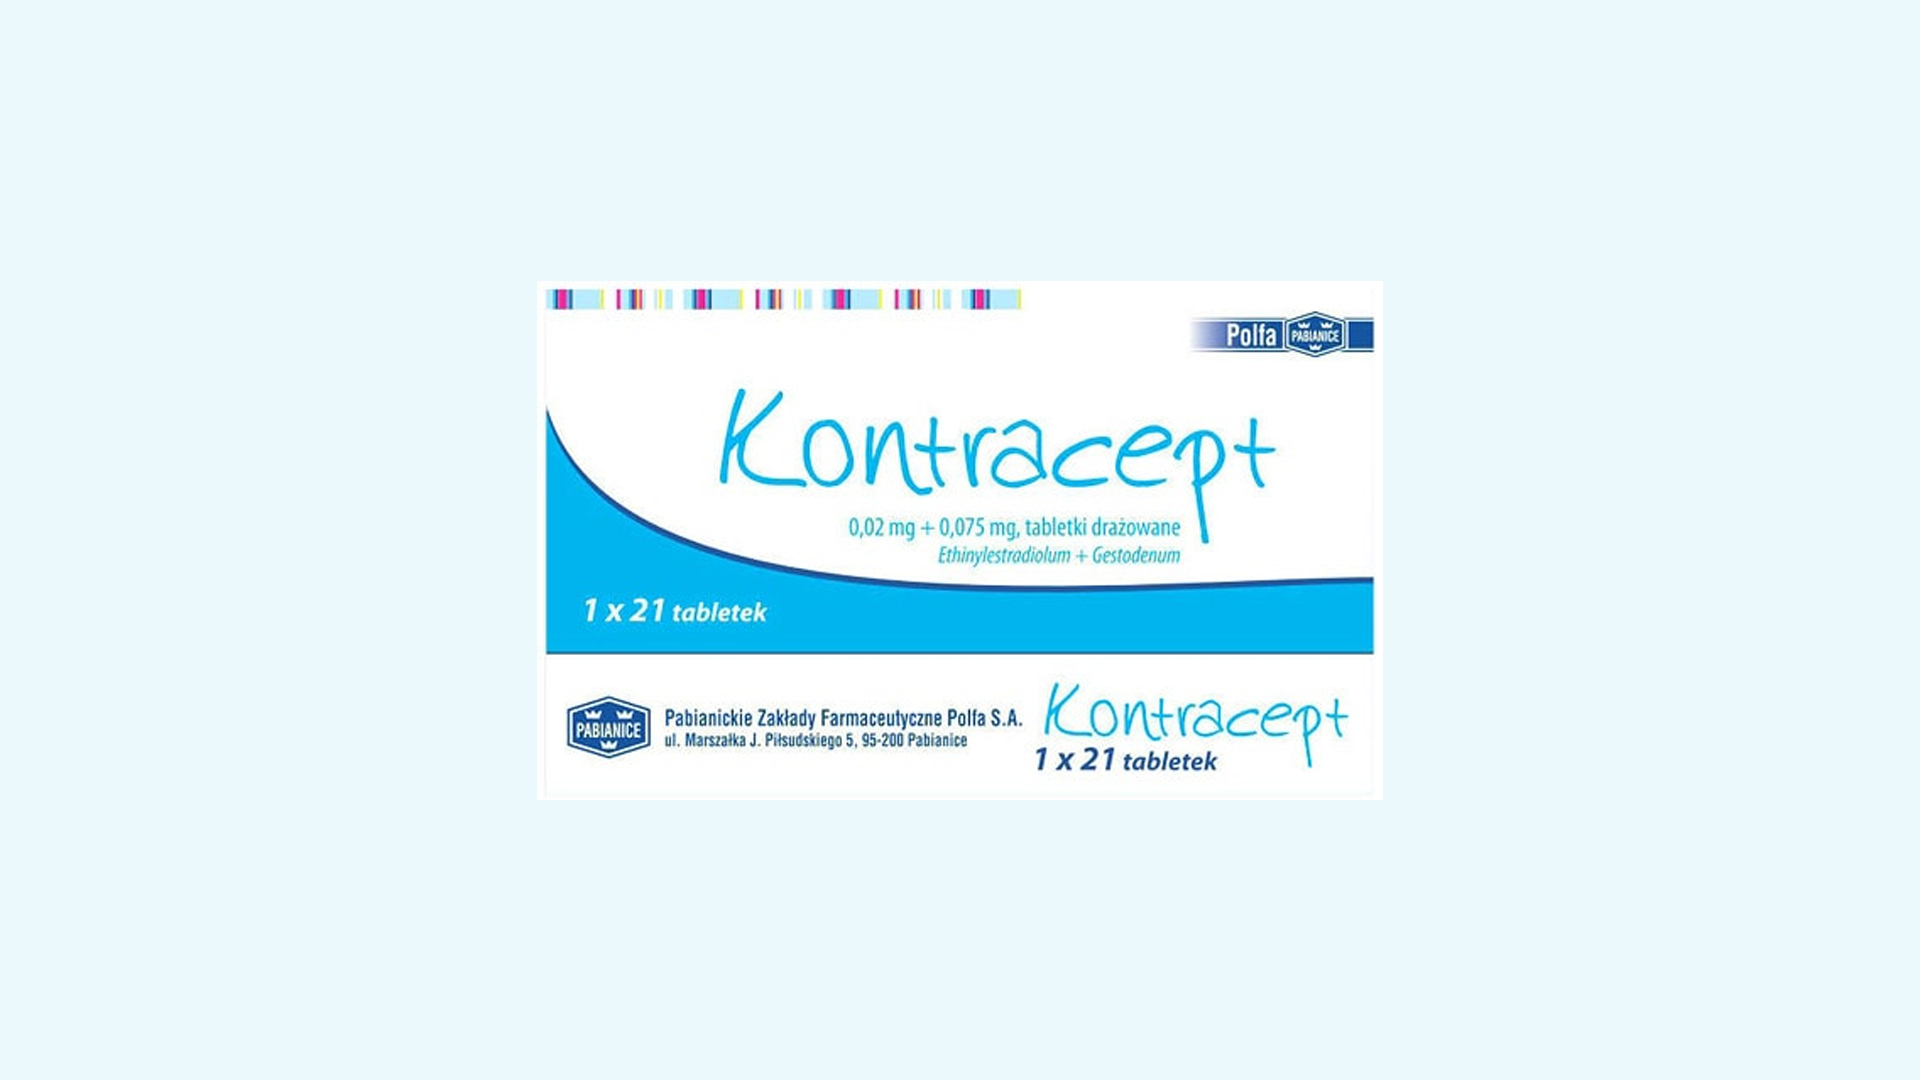 Kontracept – informacje o leku, dawkowanie oraz przeciwwskazania